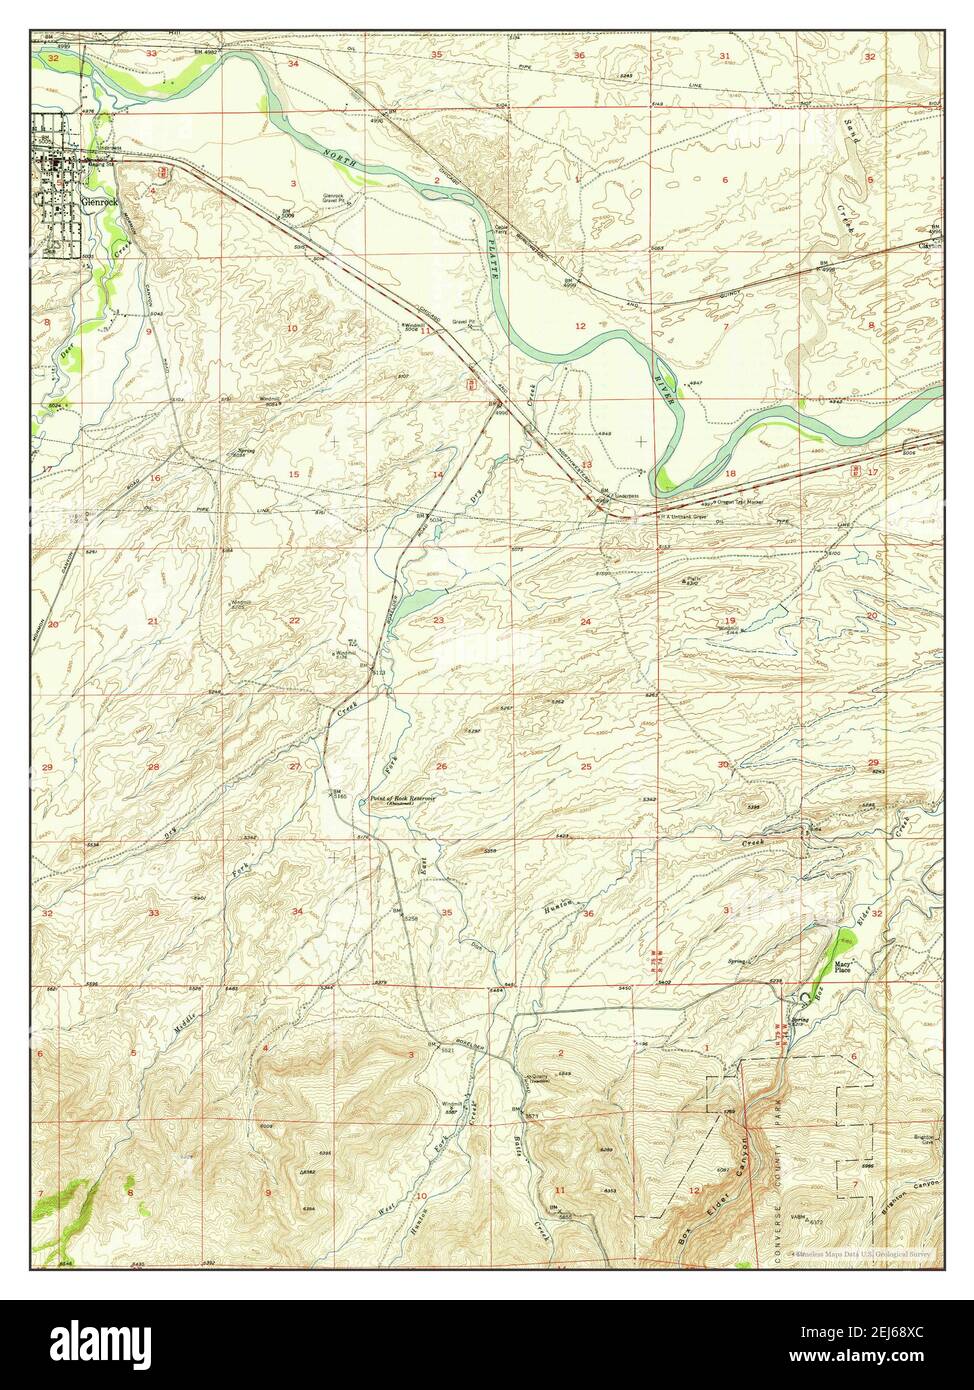 Glenrock, Wyoming, carte 1950, 1:24000, États-Unis d'Amérique par Timeless Maps, données U.S. Geological Survey Banque D'Images